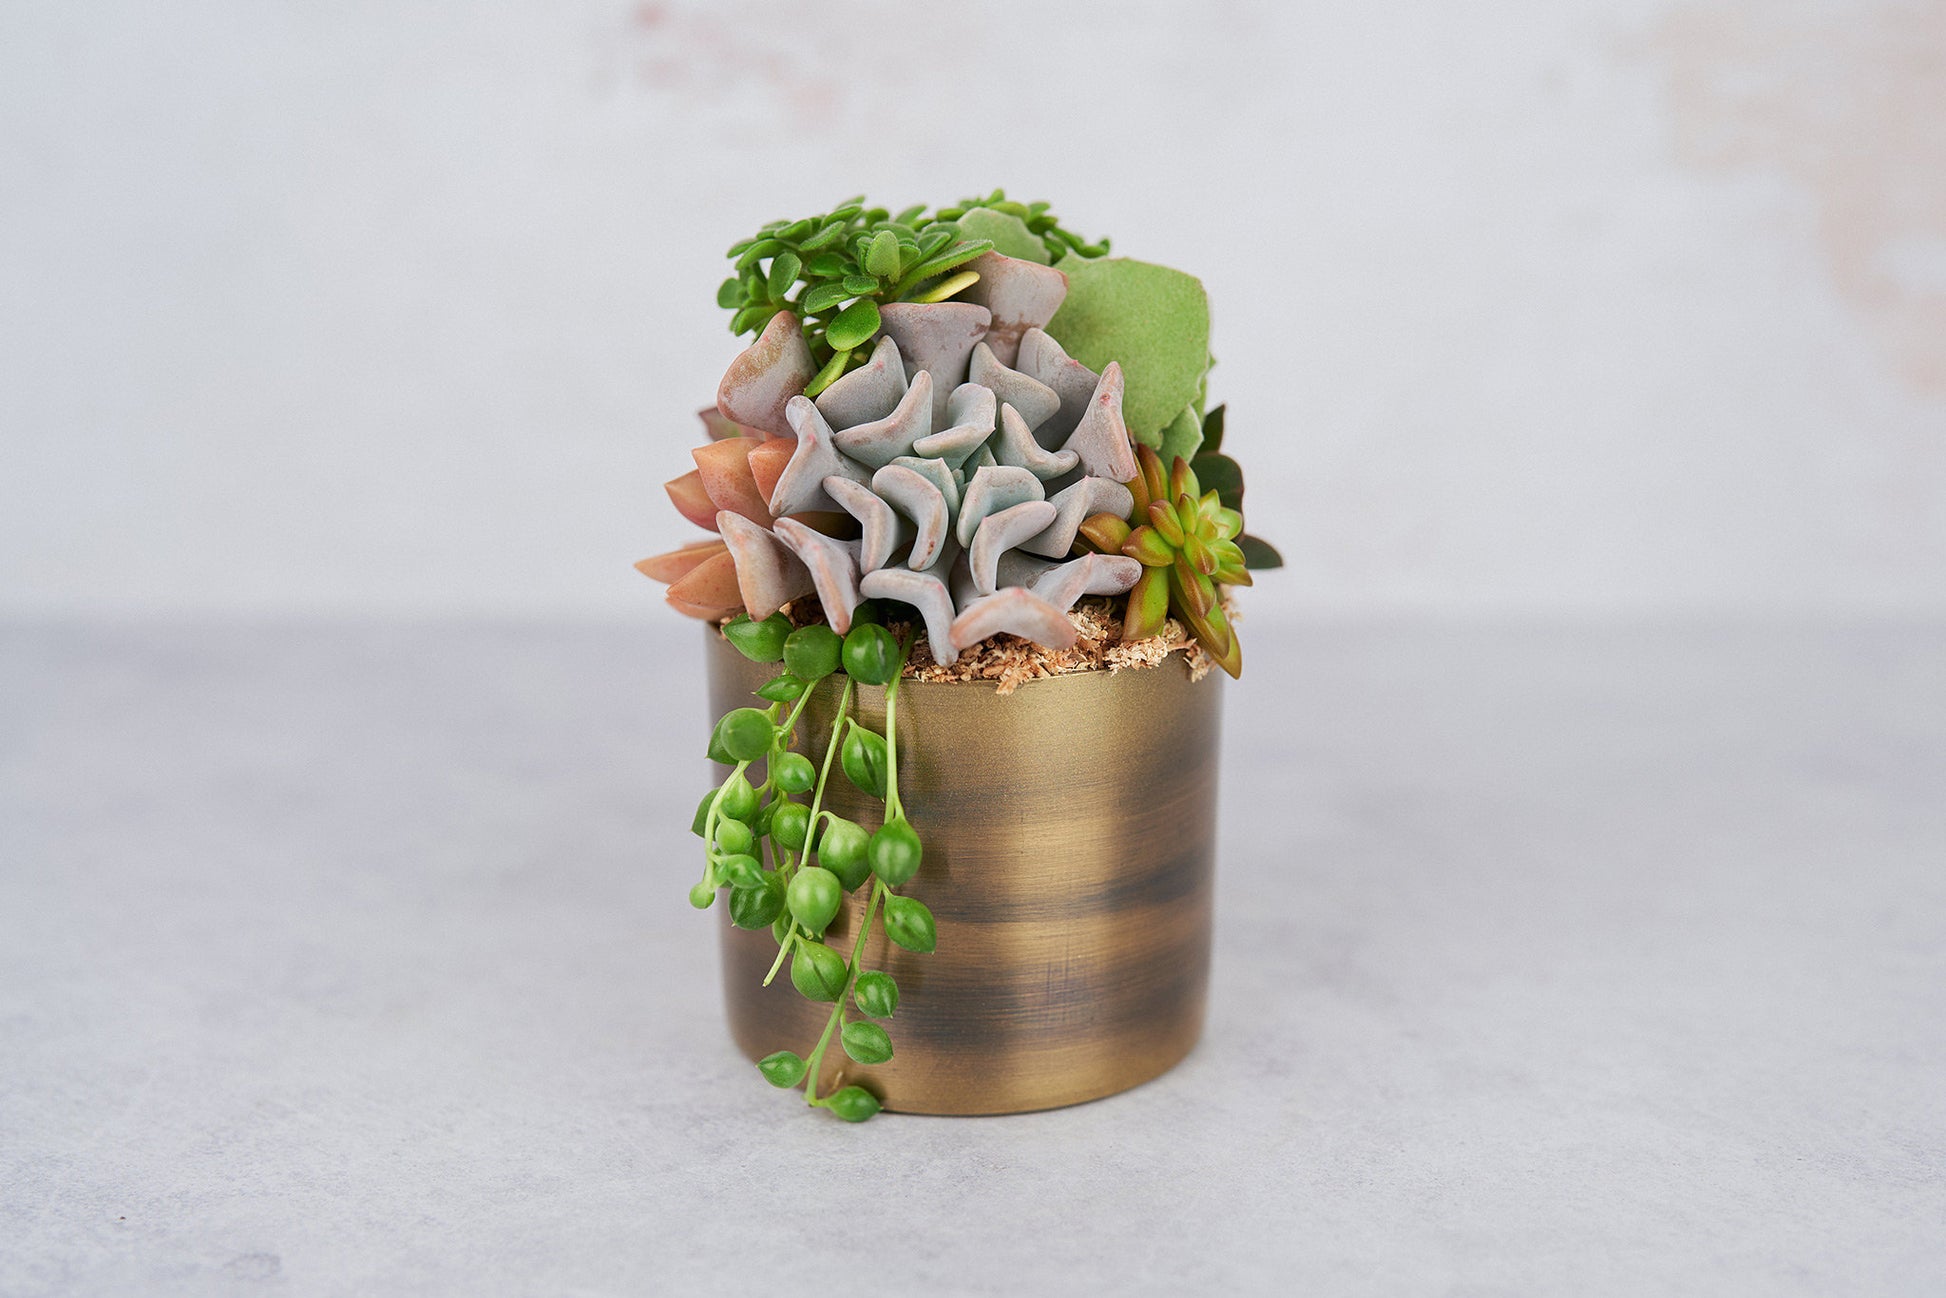 Small Bronze Metal Succulent Arrangement Planter: Modern Living Succulent Gift, Centerpiece for Weddings & Events, Housewarming Gift